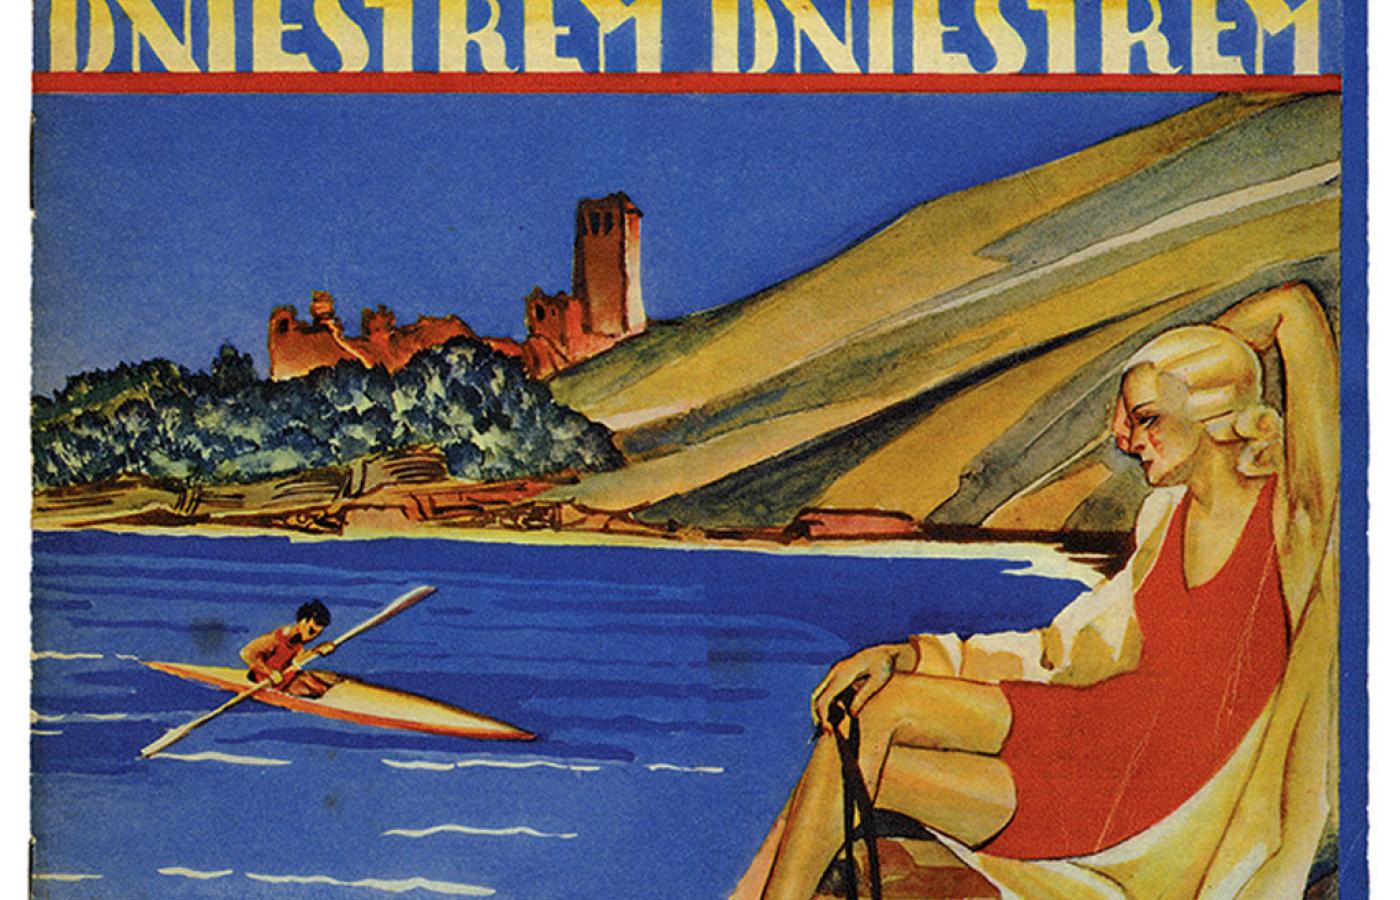 Turystyczny plakat reklamowy Zaleszczyk z lat 30.